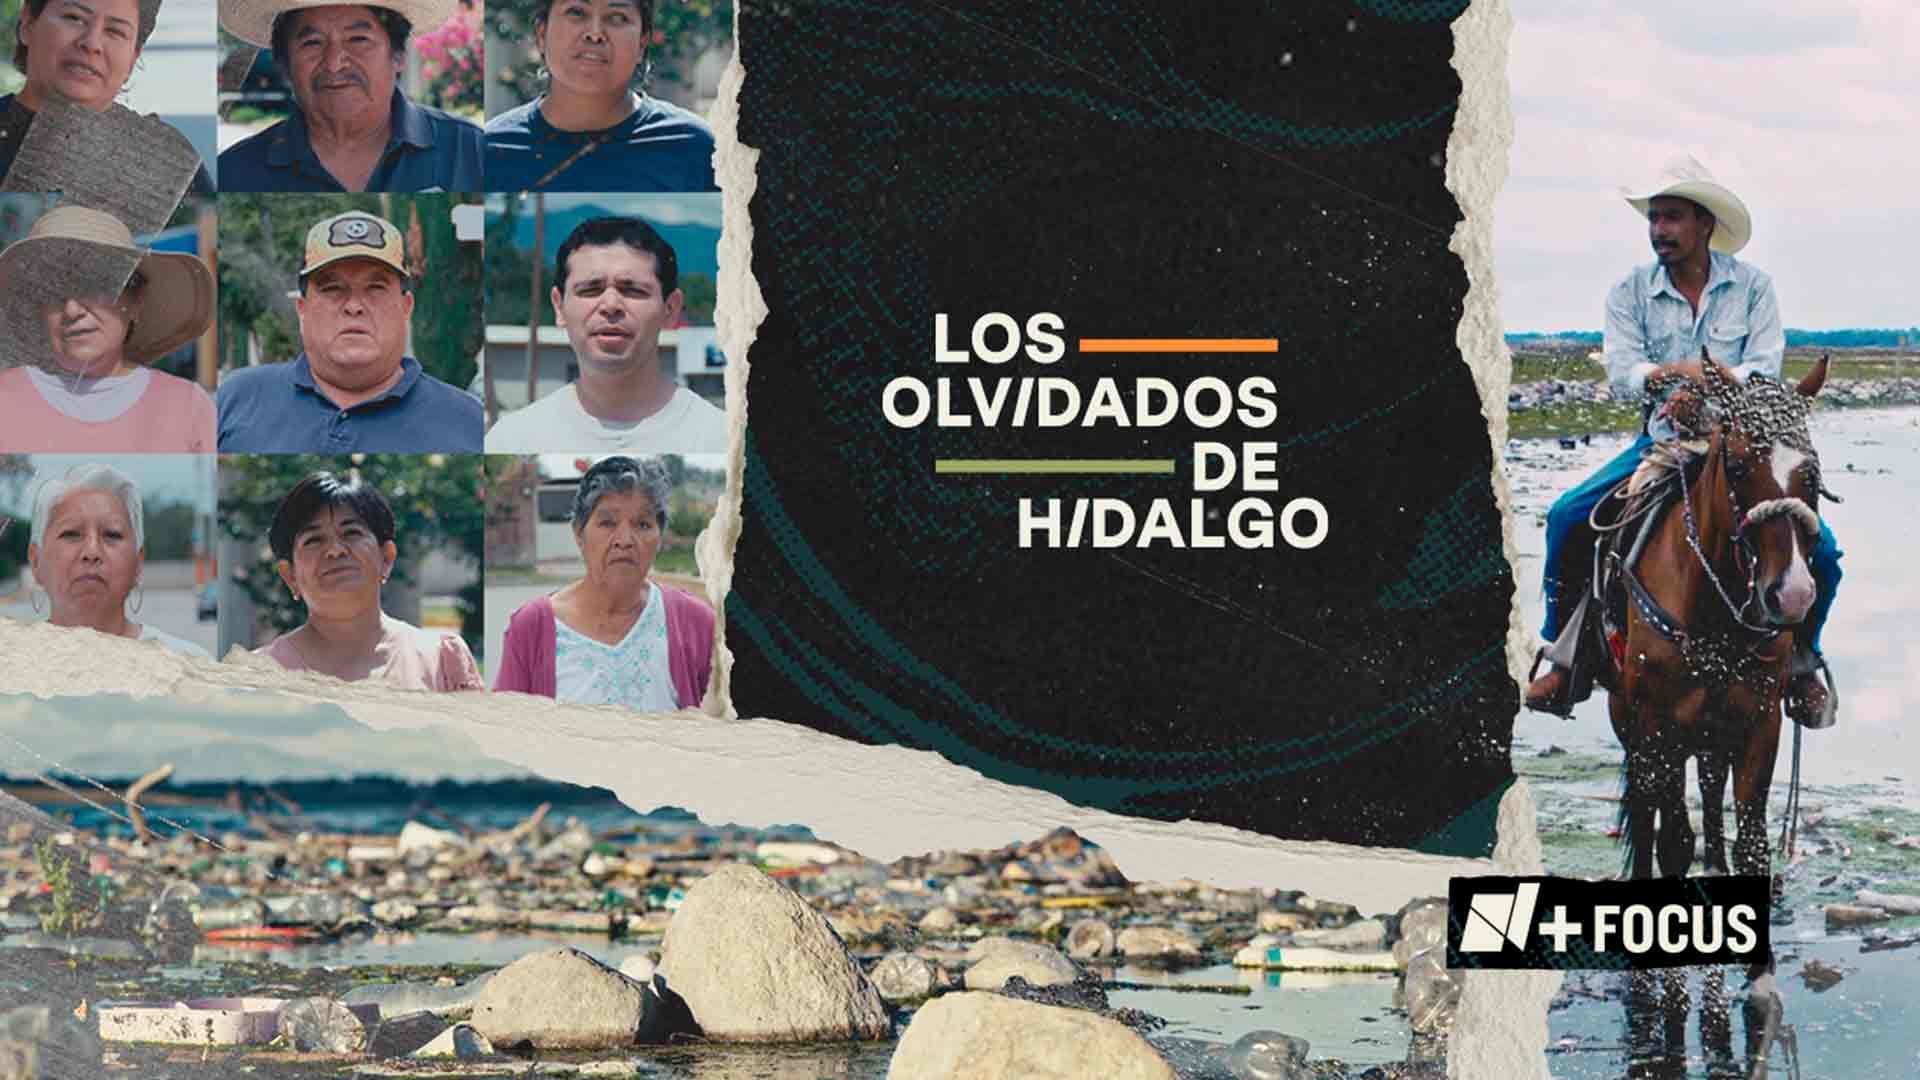 N+ Focus Presenta “Los Olvidados de Hidalgo”, una Investigación Sobre una Catástrofe Medioambiental Más en México